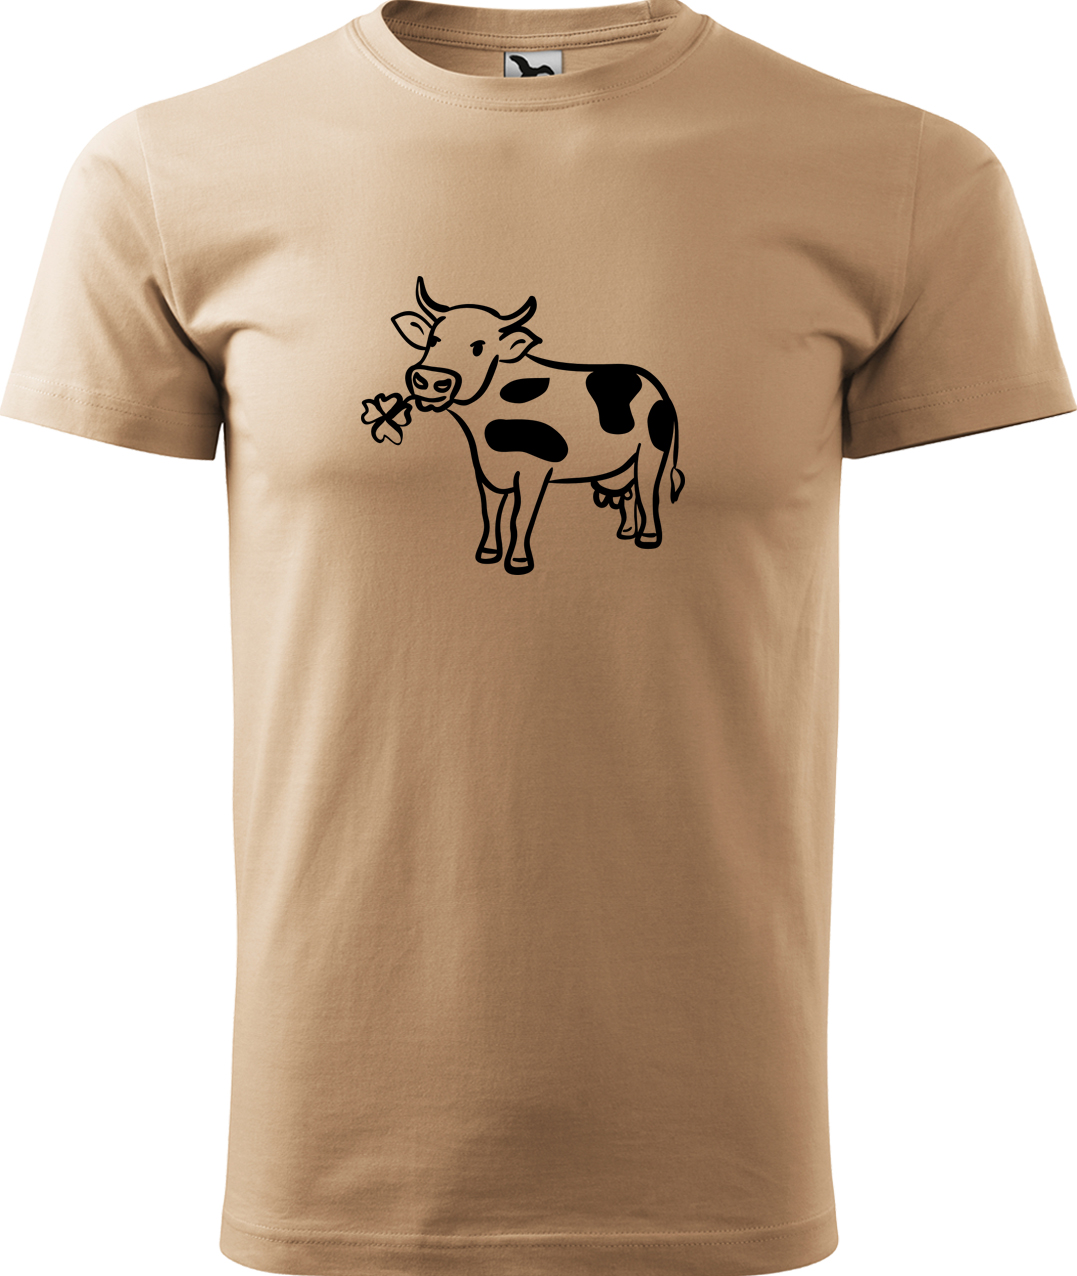 Pánské tričko s krávou - Kravička a jetel Velikost: XL, Barva: Písková (08), Střih: pánský